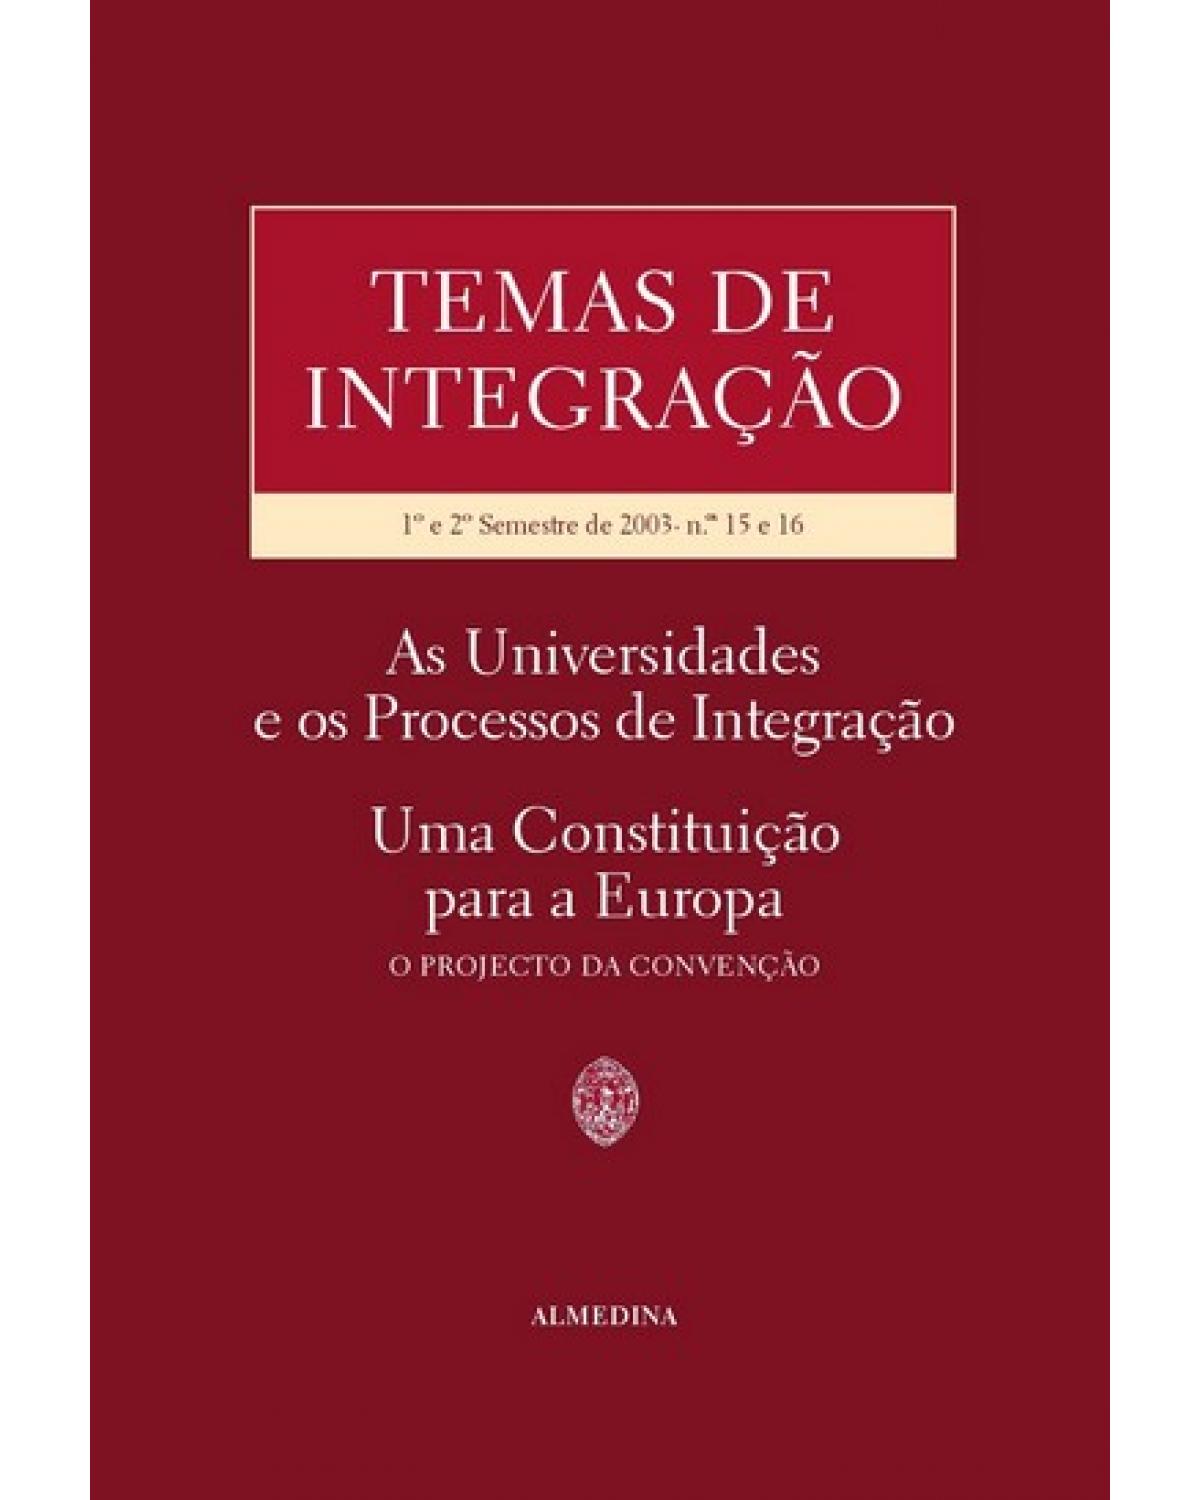 Temas de integração - 1º e 2º semestre de 2003 - As universidades e os processos de integração - Uma constituição para a Europa - O projecto da convenção - 1ª Edição | 2003